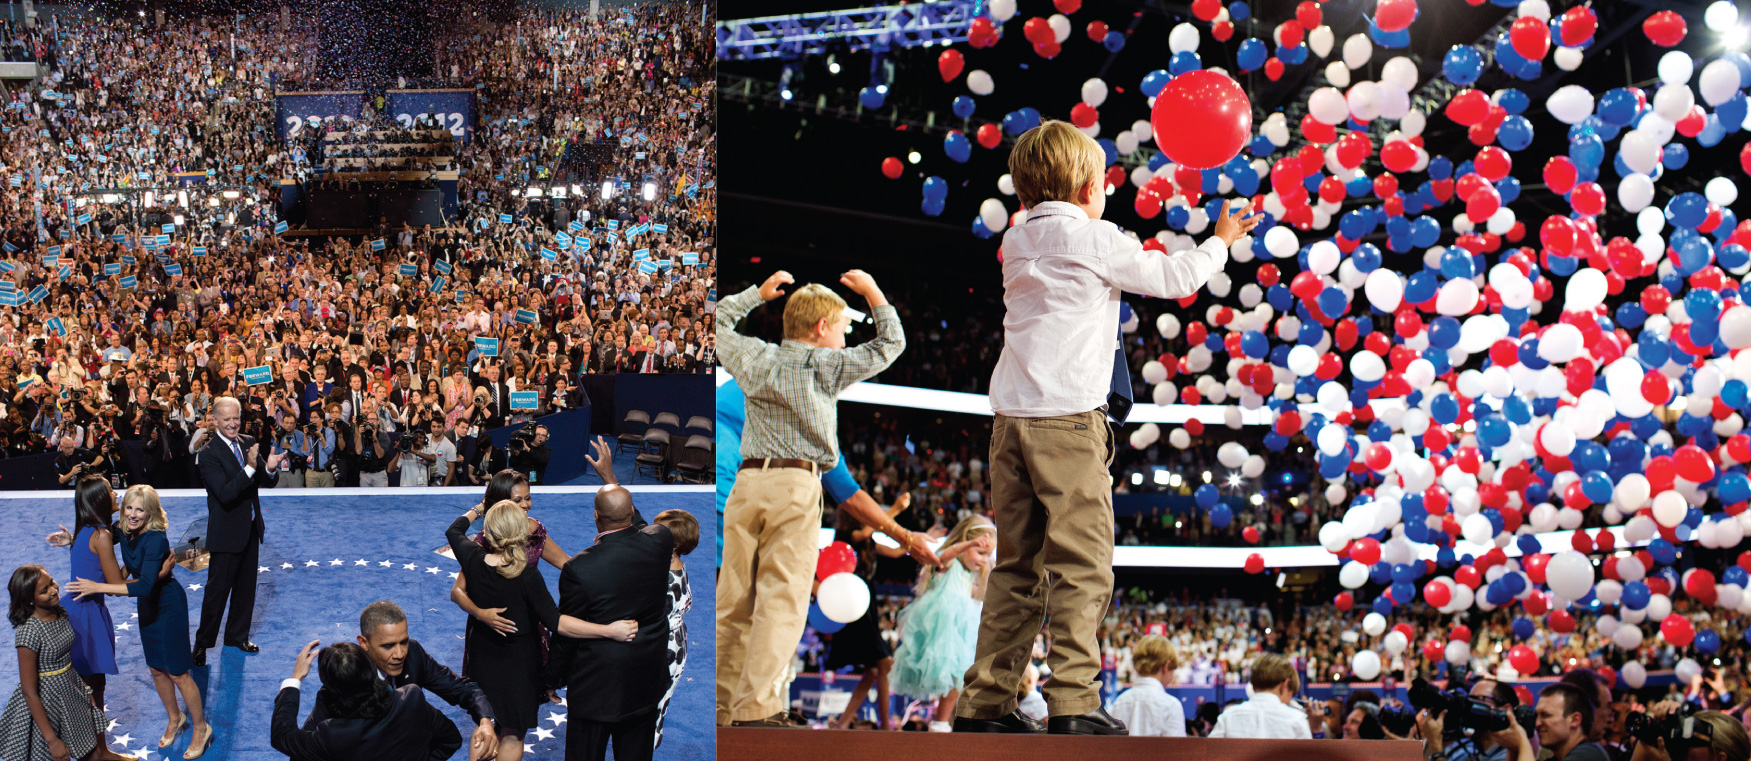 左边的图片是奥巴马及其家人在大批人面前的照片。 左边的图片是几个孩子在舞台上在一大群人面前。 大量的气球从上方坠落。